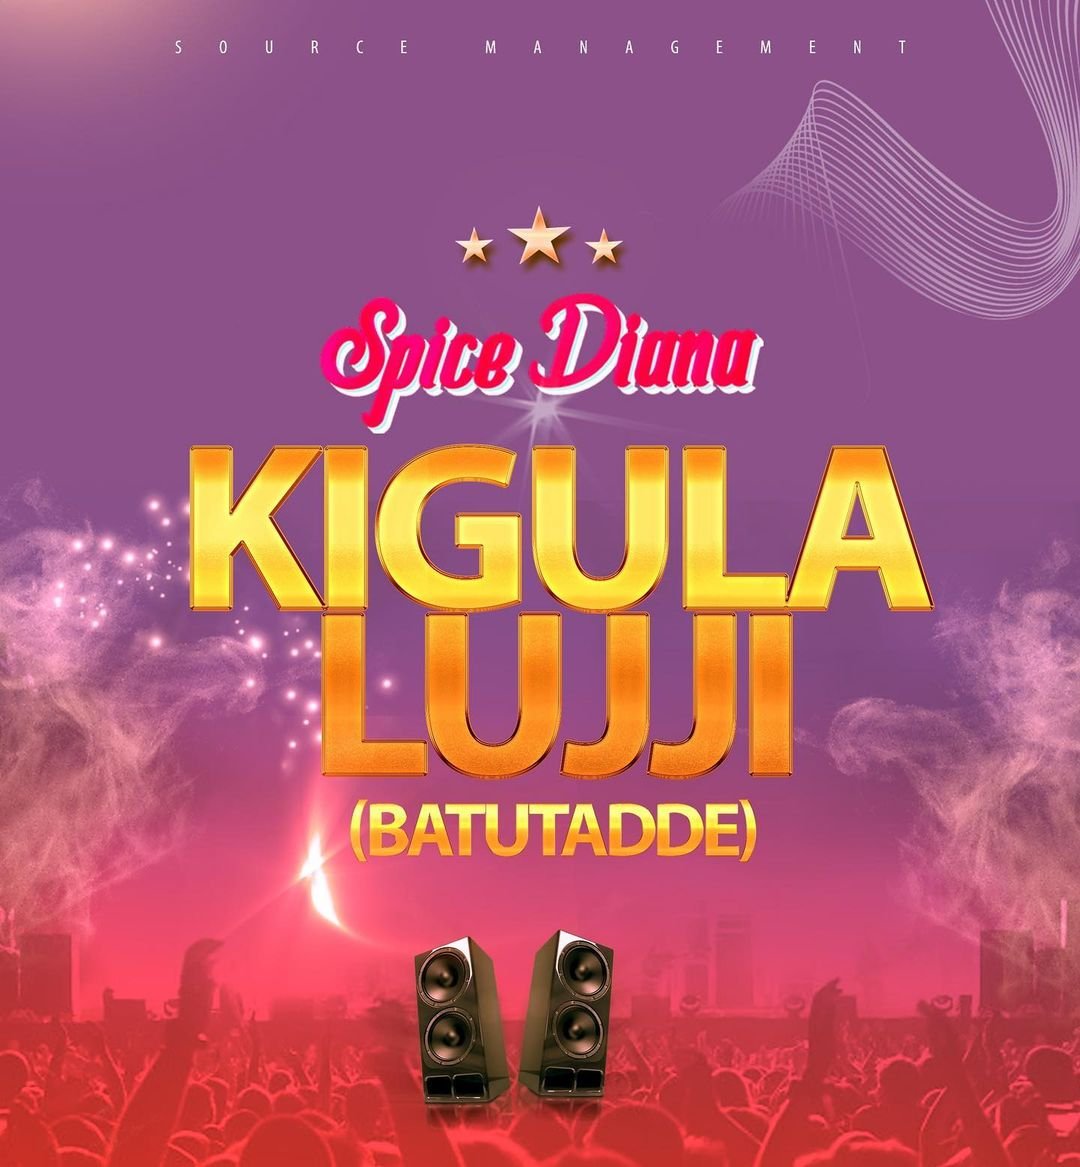 Kigula Lujji  By Spice Diana